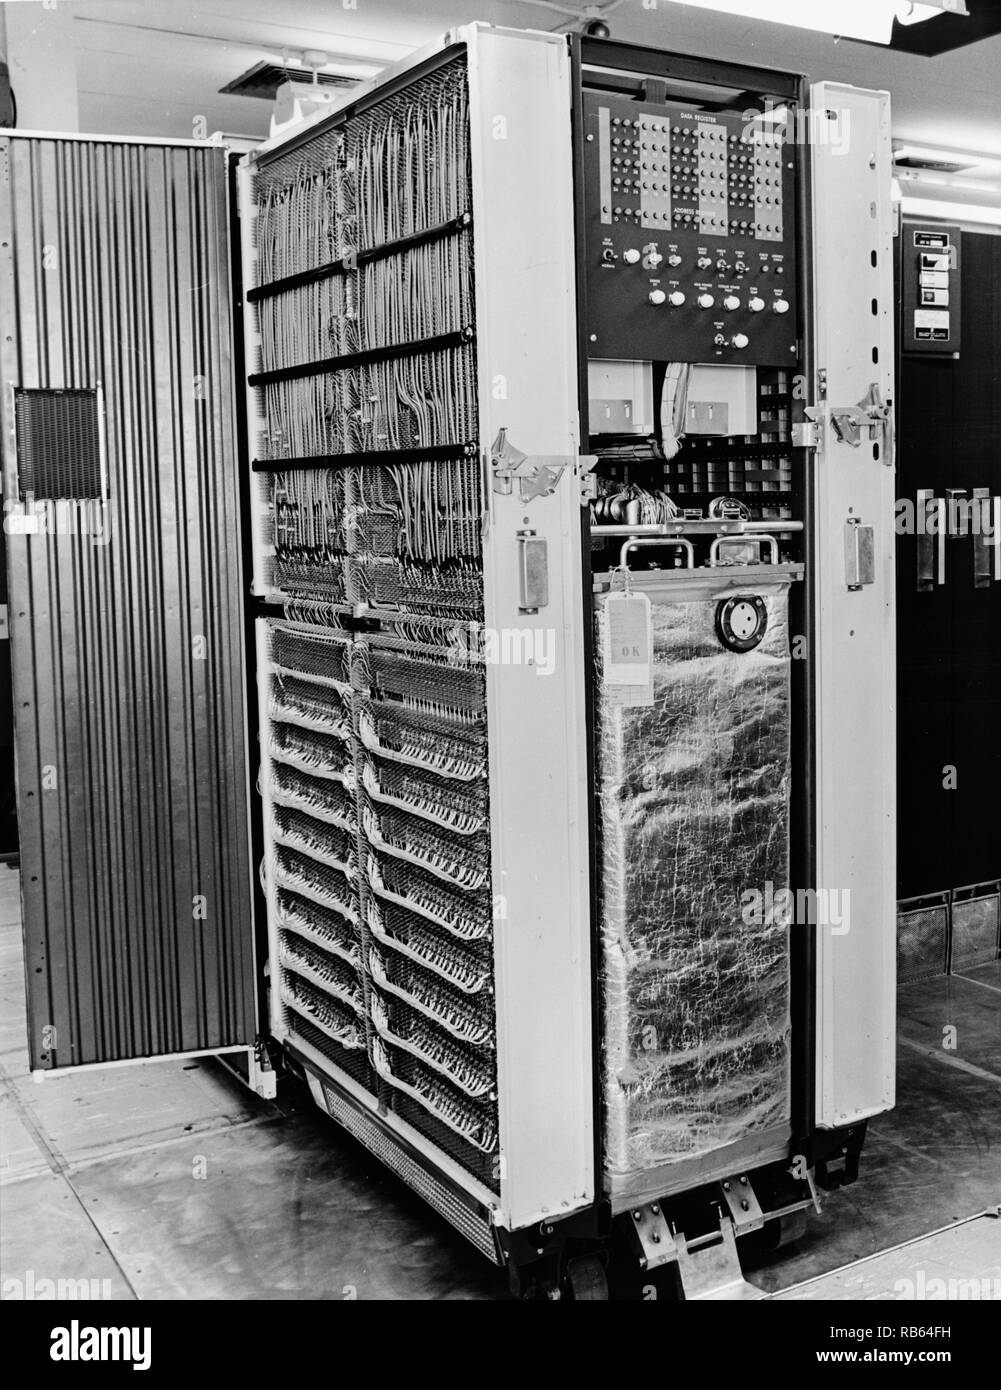 Anzeigen von IBM digital computer Modell 7090 magnet Core installation. ITT Artic Services, Inc., offizielle Foto BMEWS Standort II, Klar, AK, von unbekannten Fotografen, 17. September 1965. Clear Air Force Station, Ballistic Missile Early Warning System Site II. Stockfoto